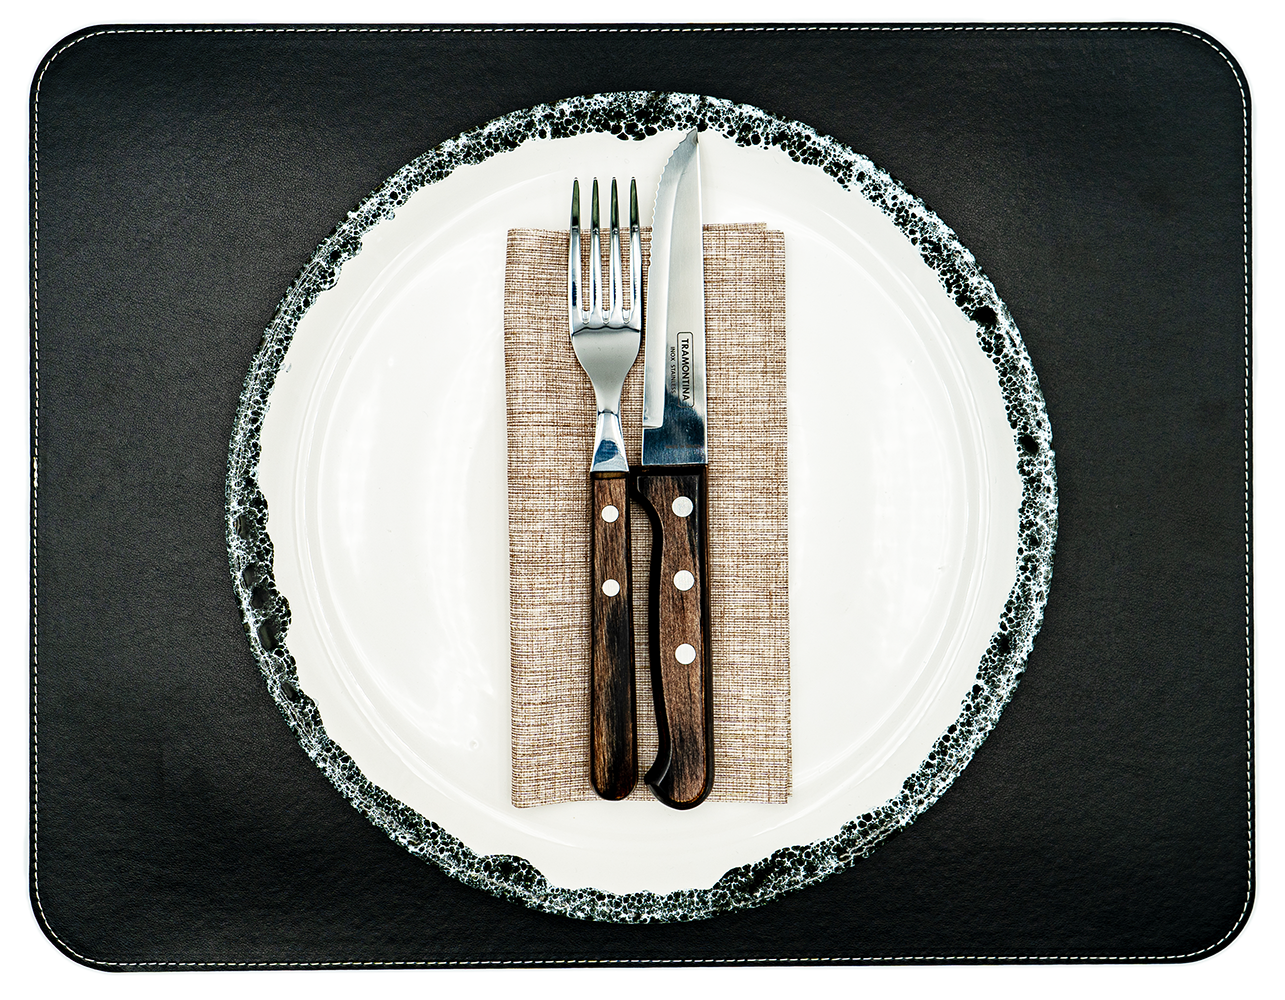 1 Tischset aus veganem PU Kunstleder - doppelseitig - 44 x 34 cm - Schwarz / Kastanie